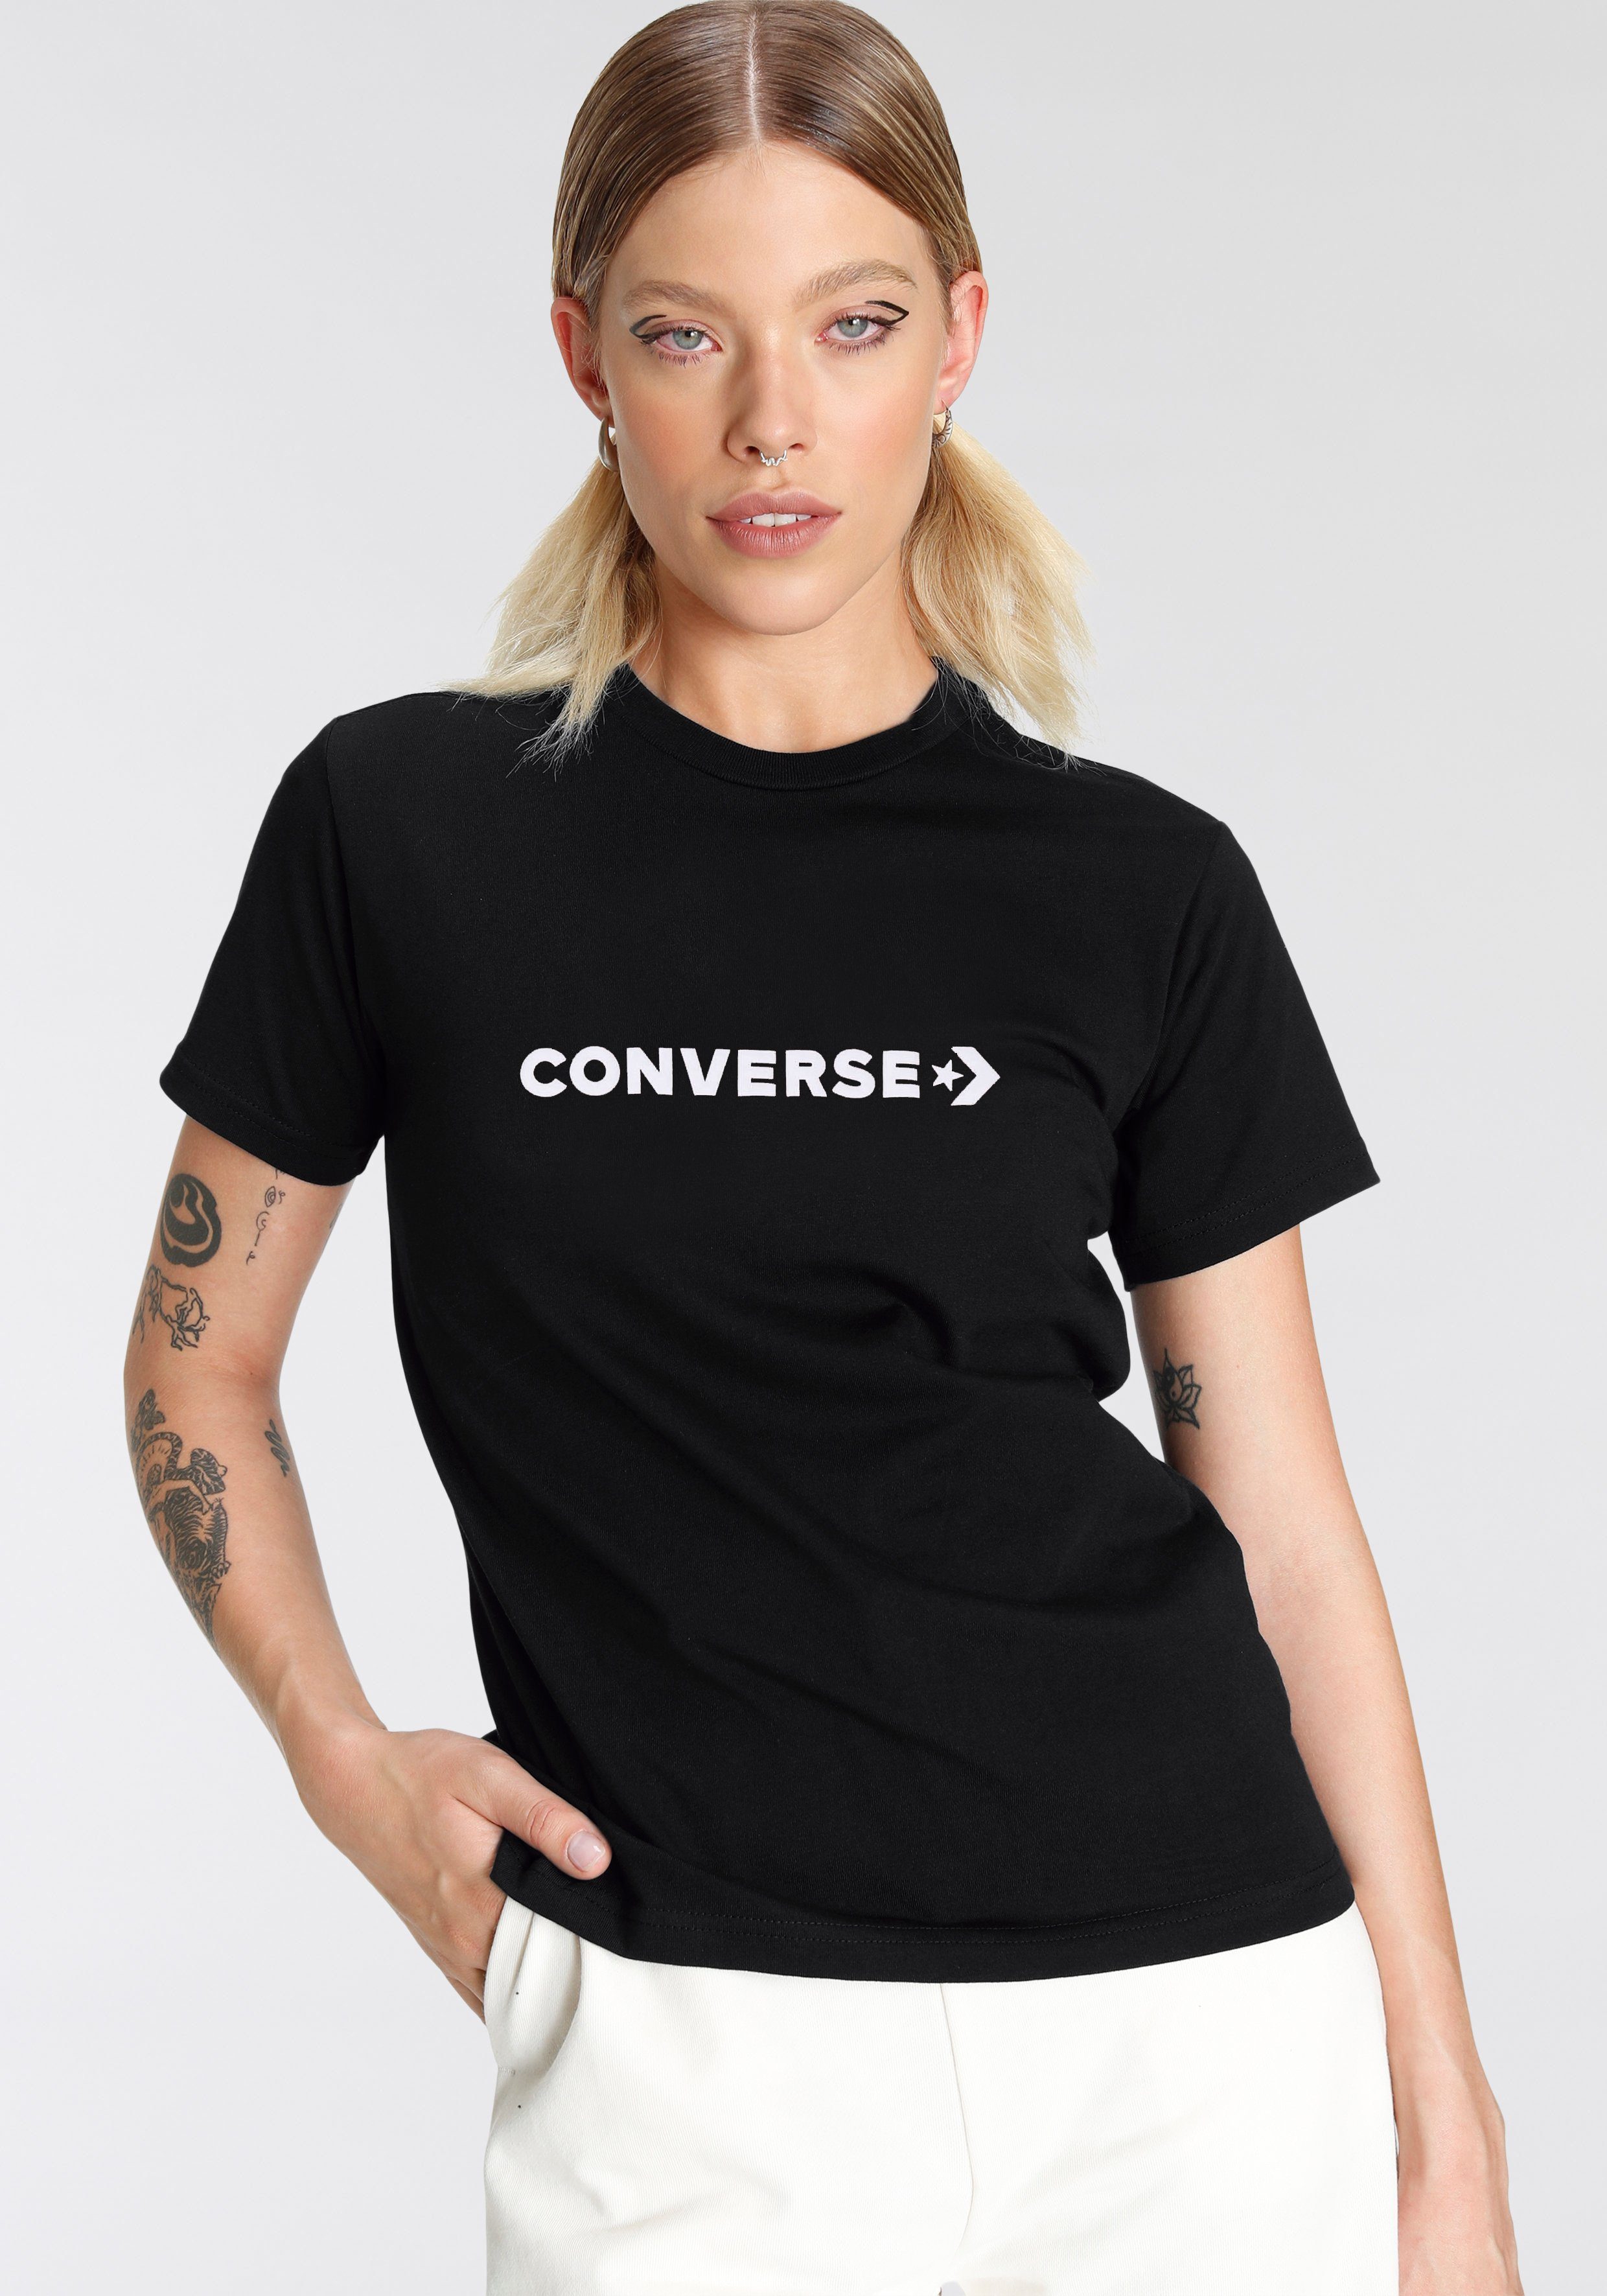 T-Shirt black Damen CONVERSE Converse T-Shirt